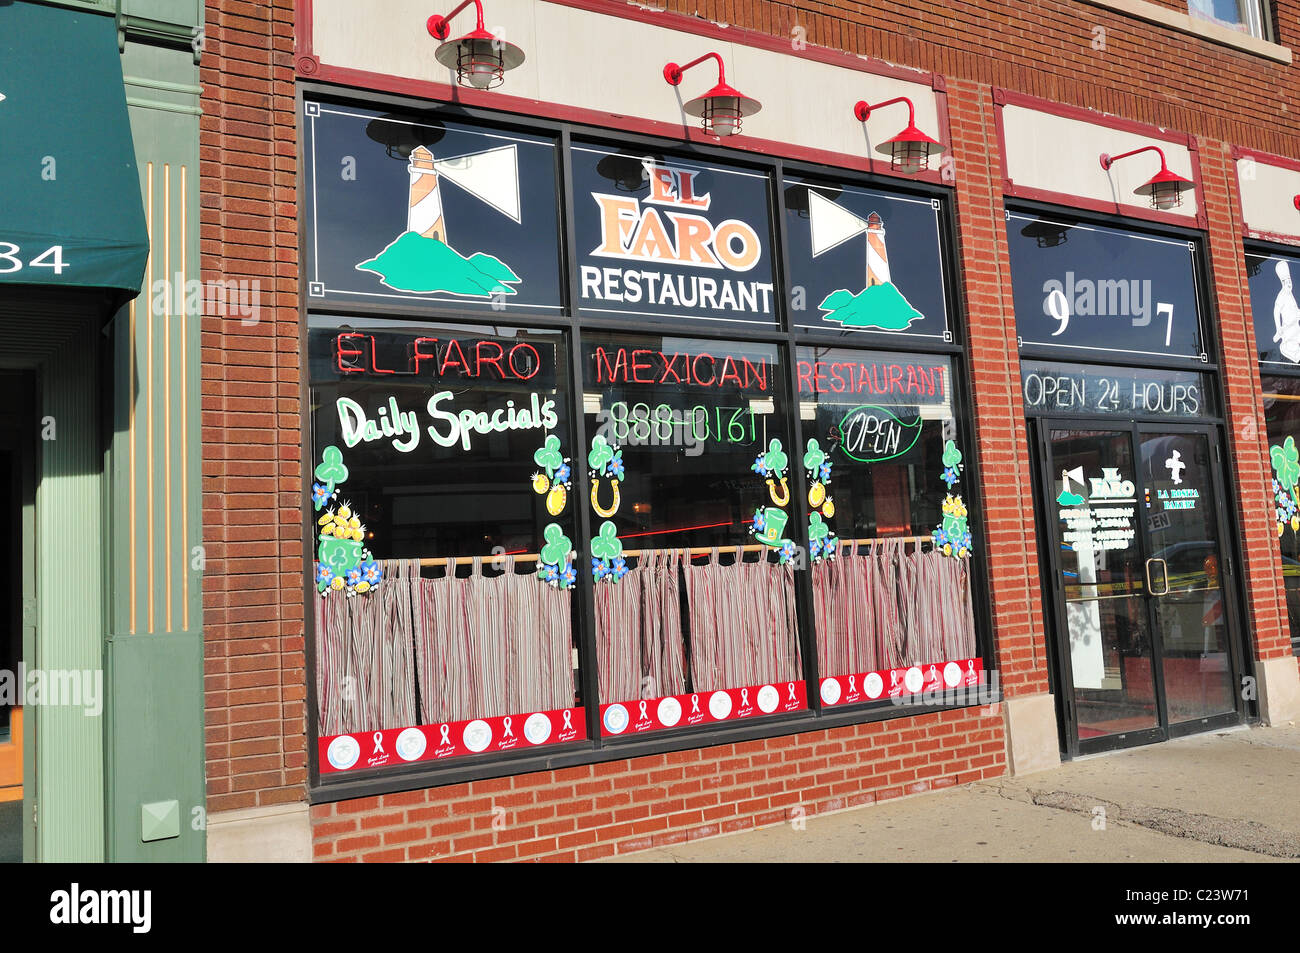 Restaurant et taverne ethnique mexicaine décorée pour la fête de l'irlandais le jour de la Saint Patrick. Elgin, Illinois, USA. Banque D'Images